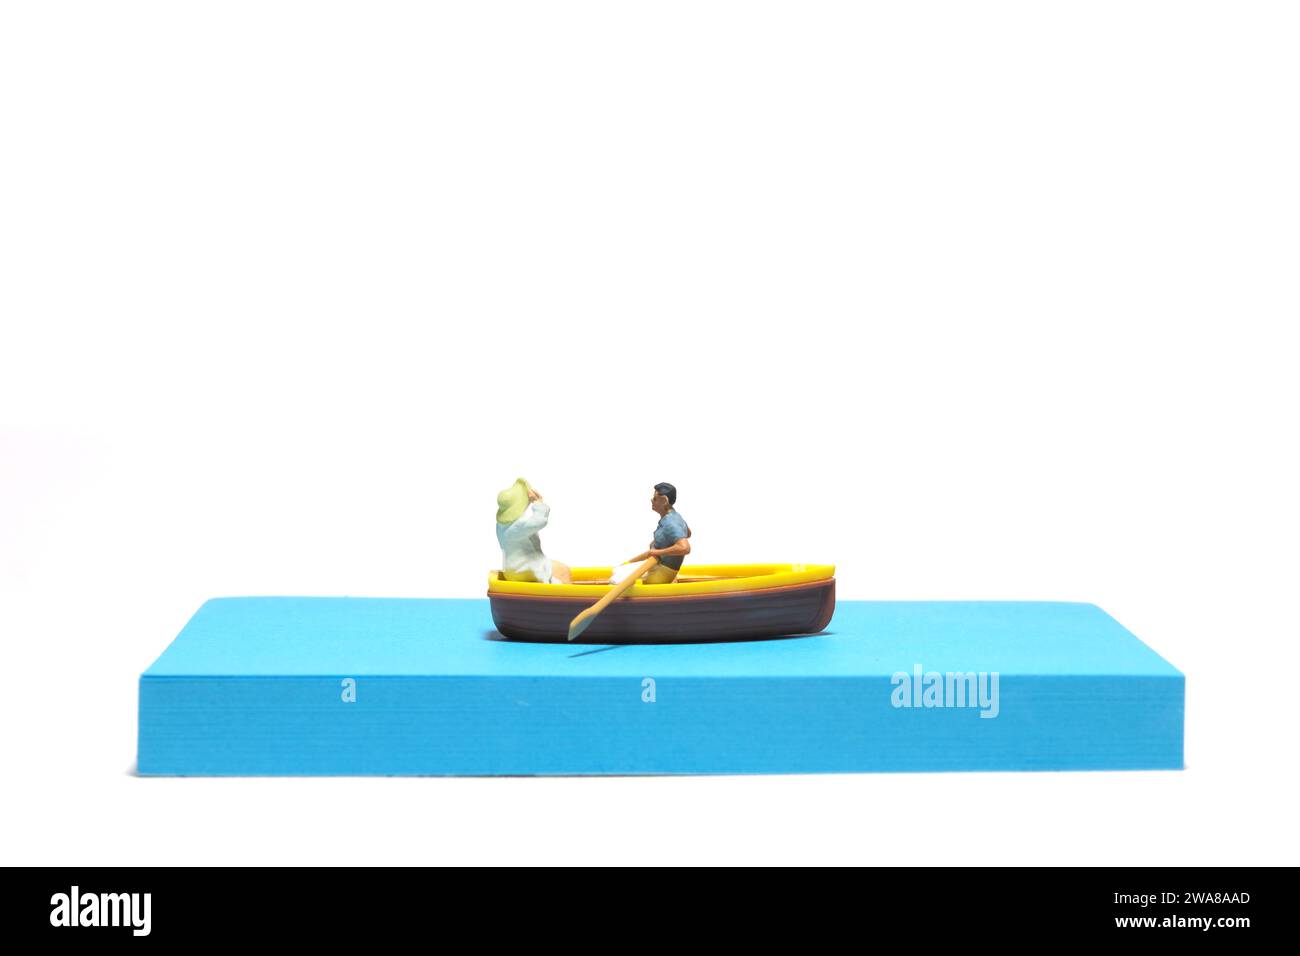 Photographie de figurine miniature créative de personnes. Installation de notes autocollantes. Un couple datant sur un bateau à la mer du lac de rivière. Isolé sur fond blanc Banque D'Images